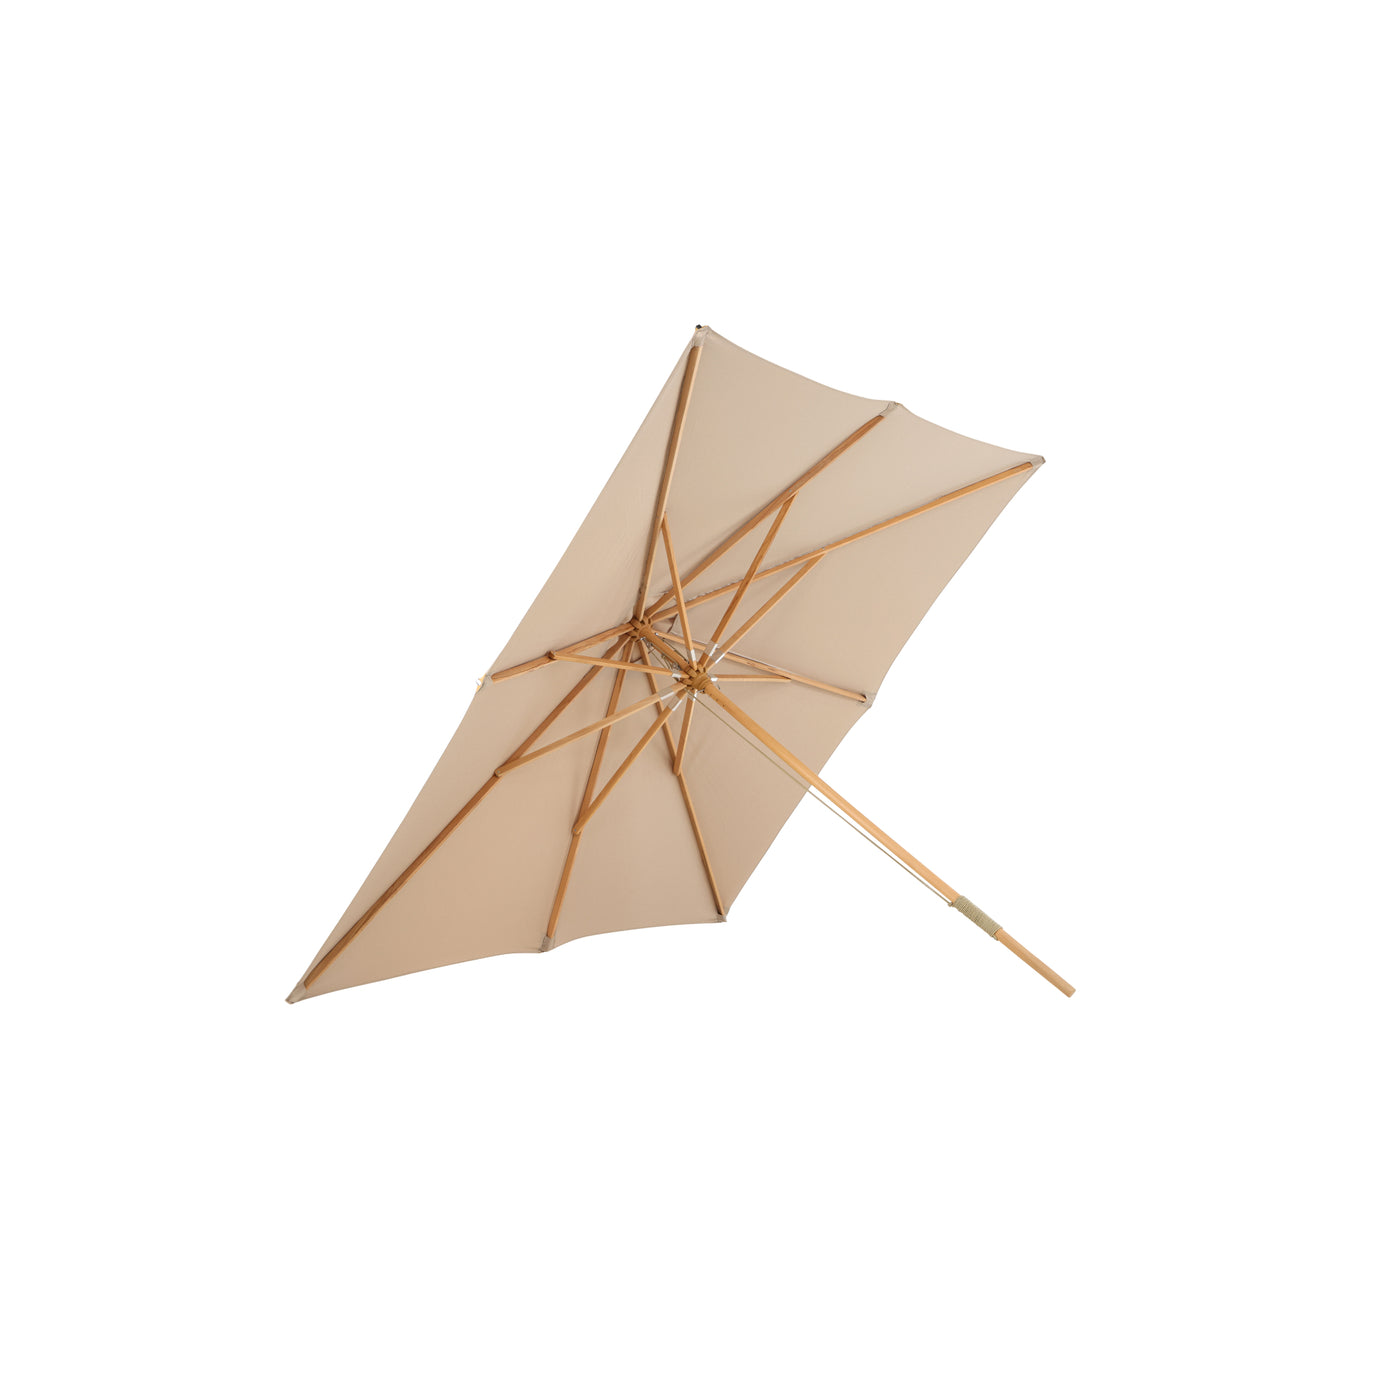 Nastasja Regenschirm - 3*3m - Holz / Braun